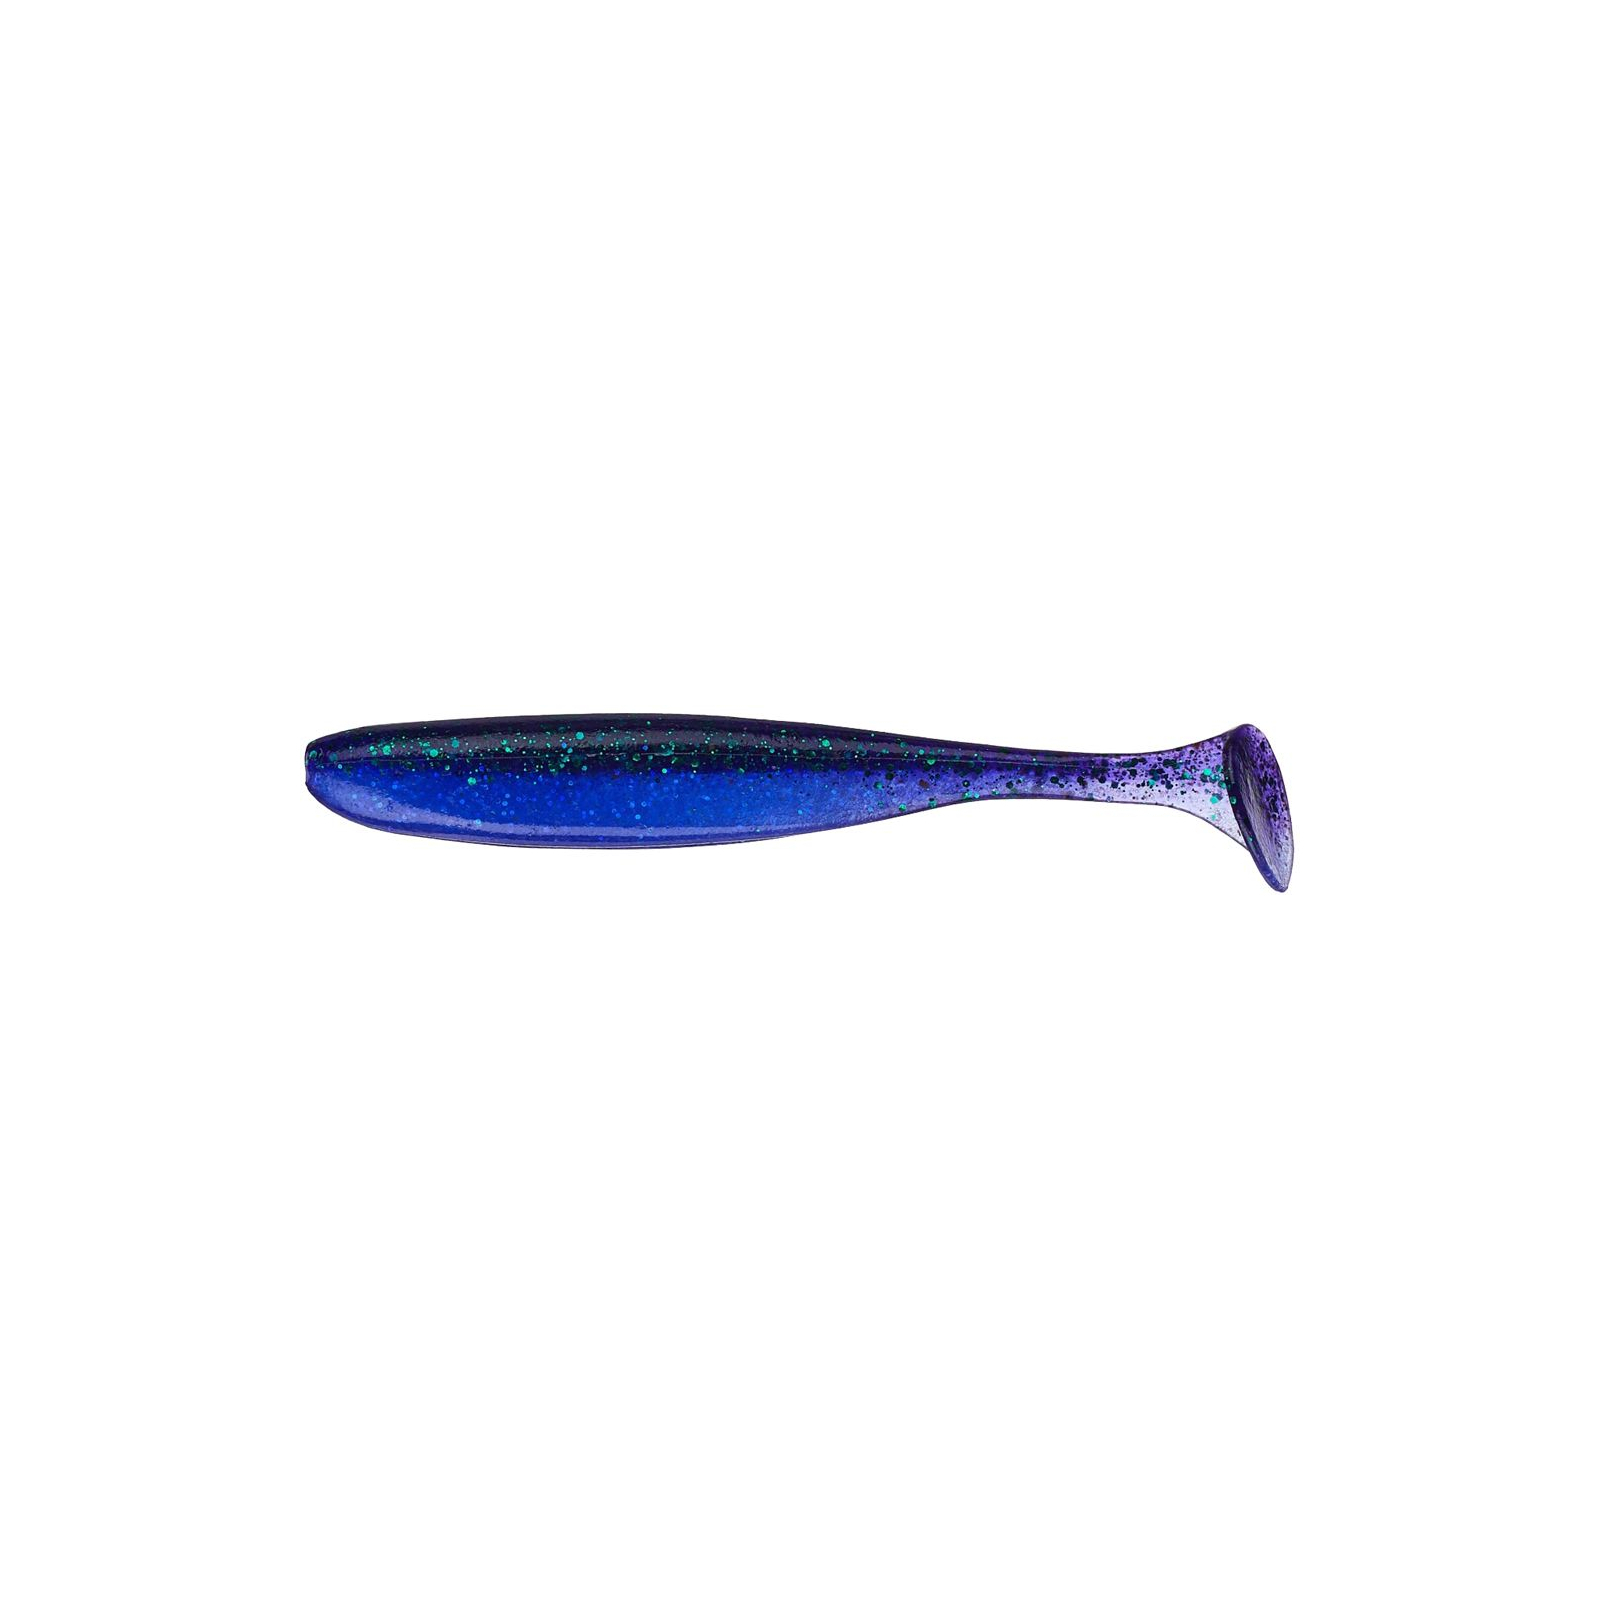 Силикон рыболовный Keitech Easy Shiner 4" (7 шт/упак) ц:408 electric june bug (1551.05.64)